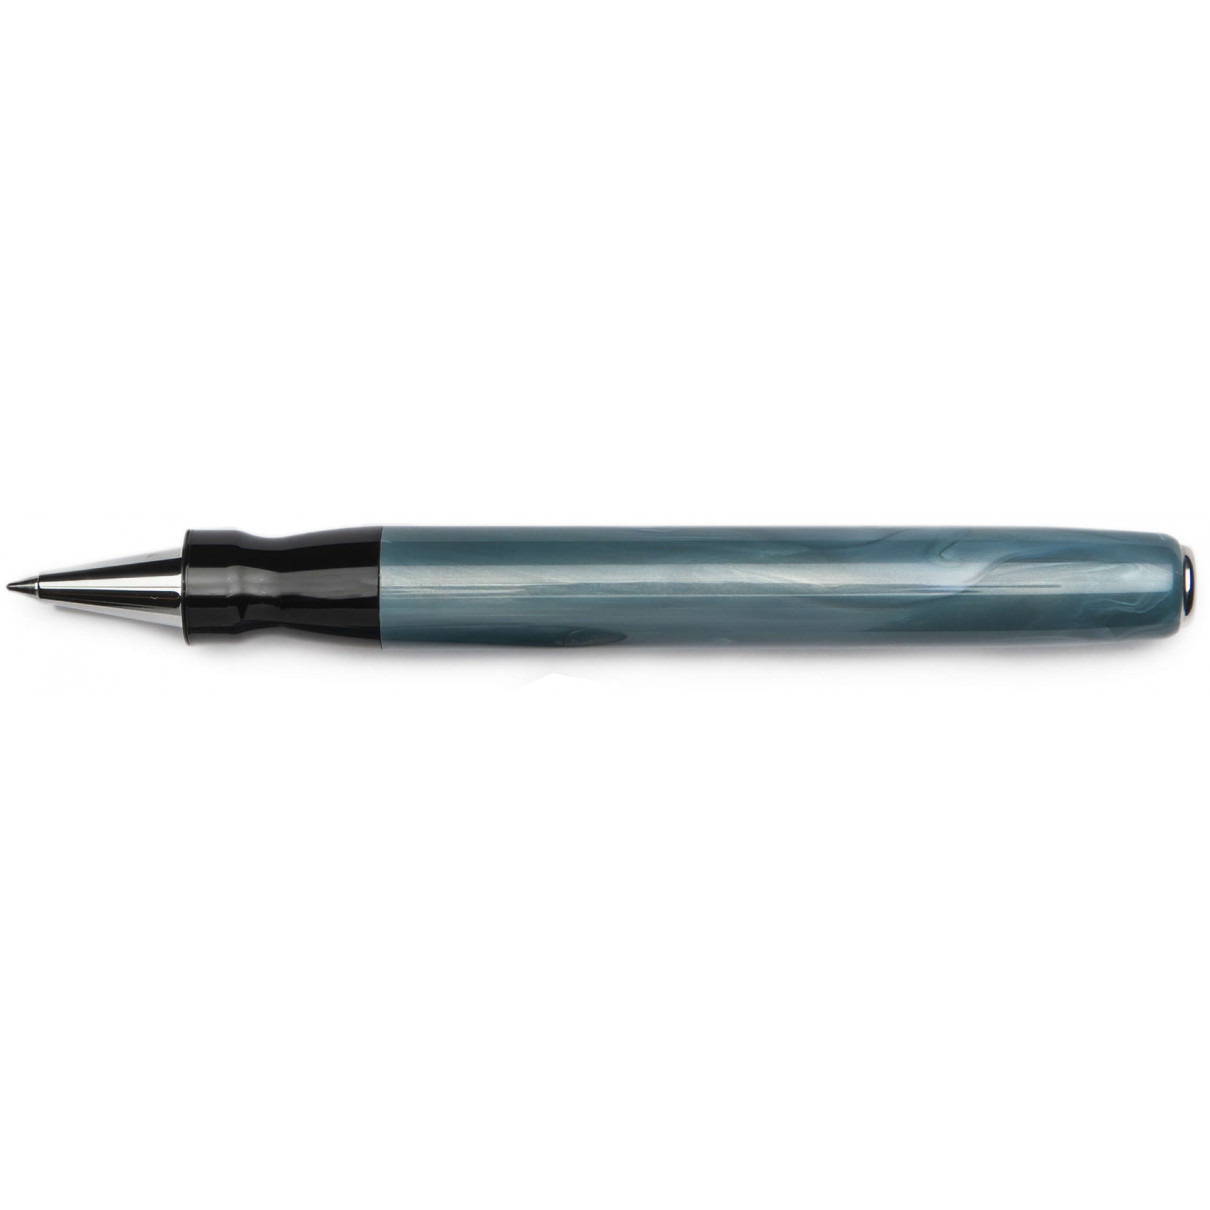 Pineider Full Metal Jacket Rollerball Pen - Ash Grey